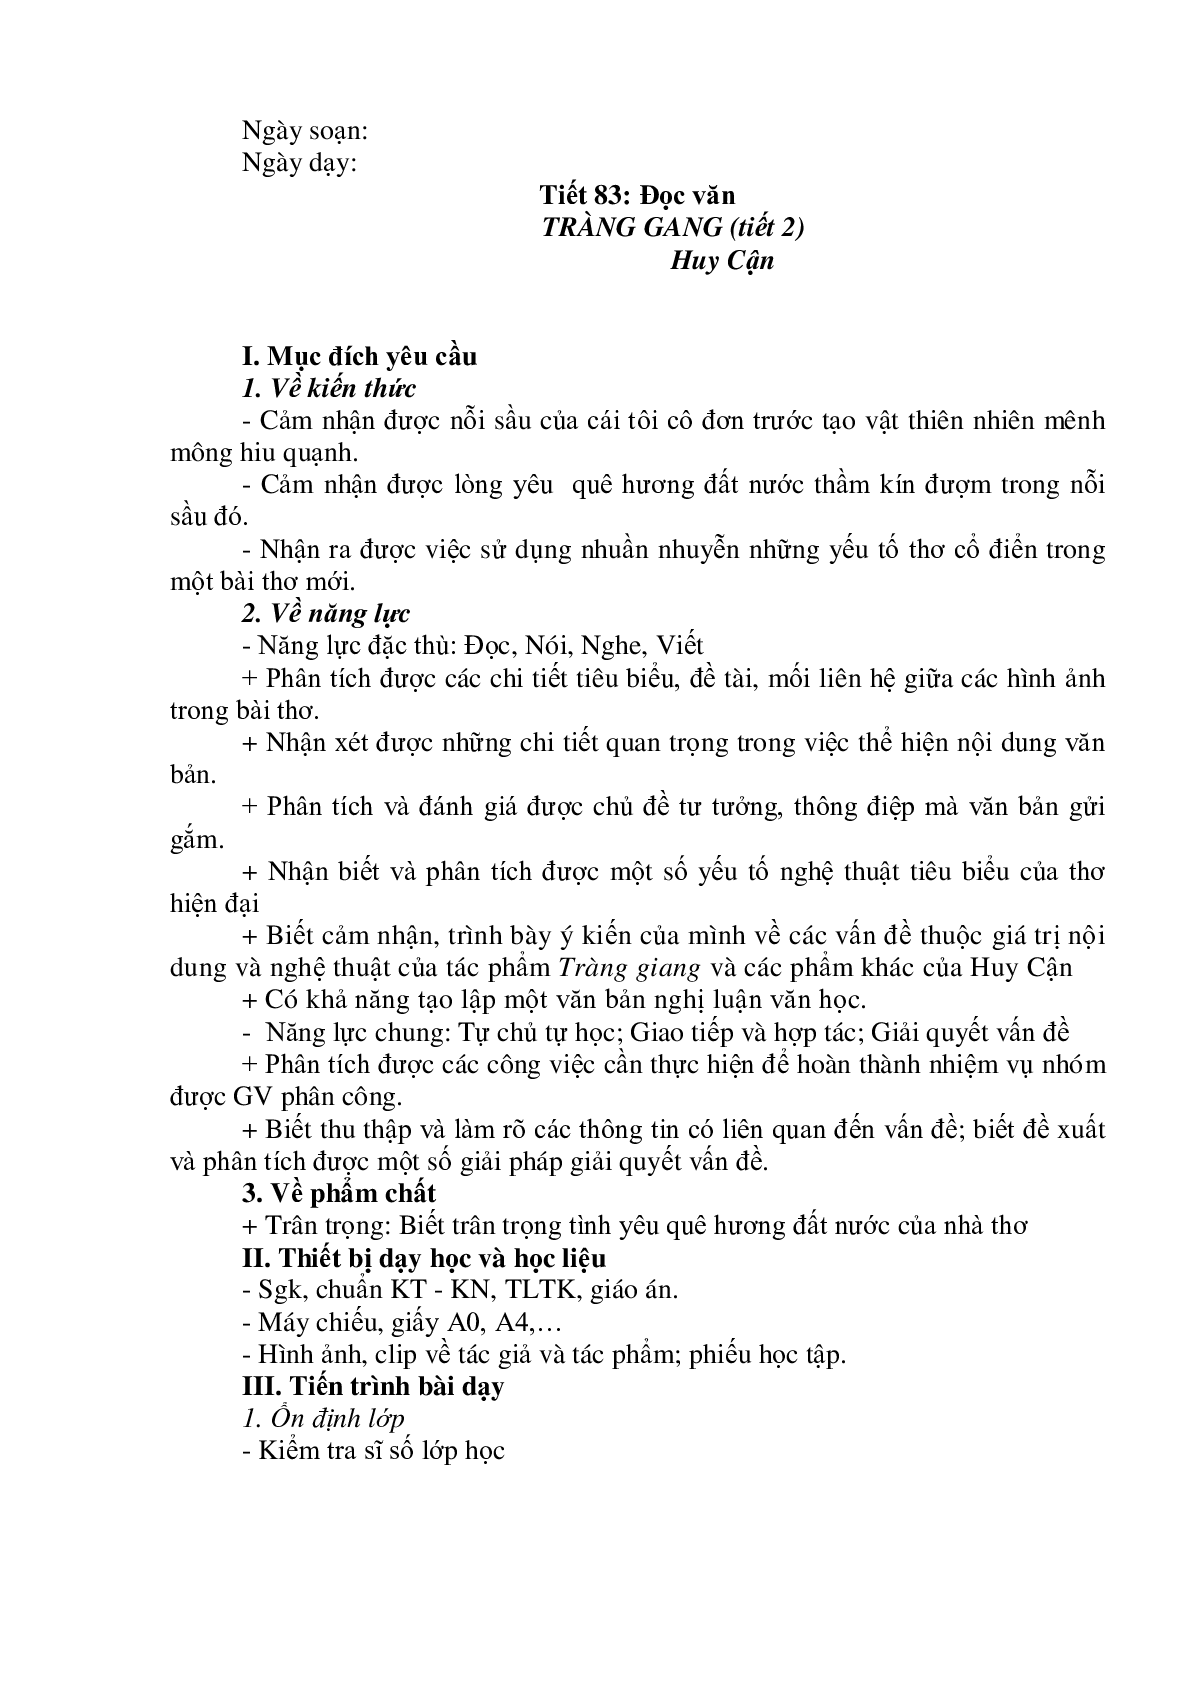 Giáo án Ngữ Văn 11: Tiết 83 Tràng giang tiết 2 mới nhất (trang 1)